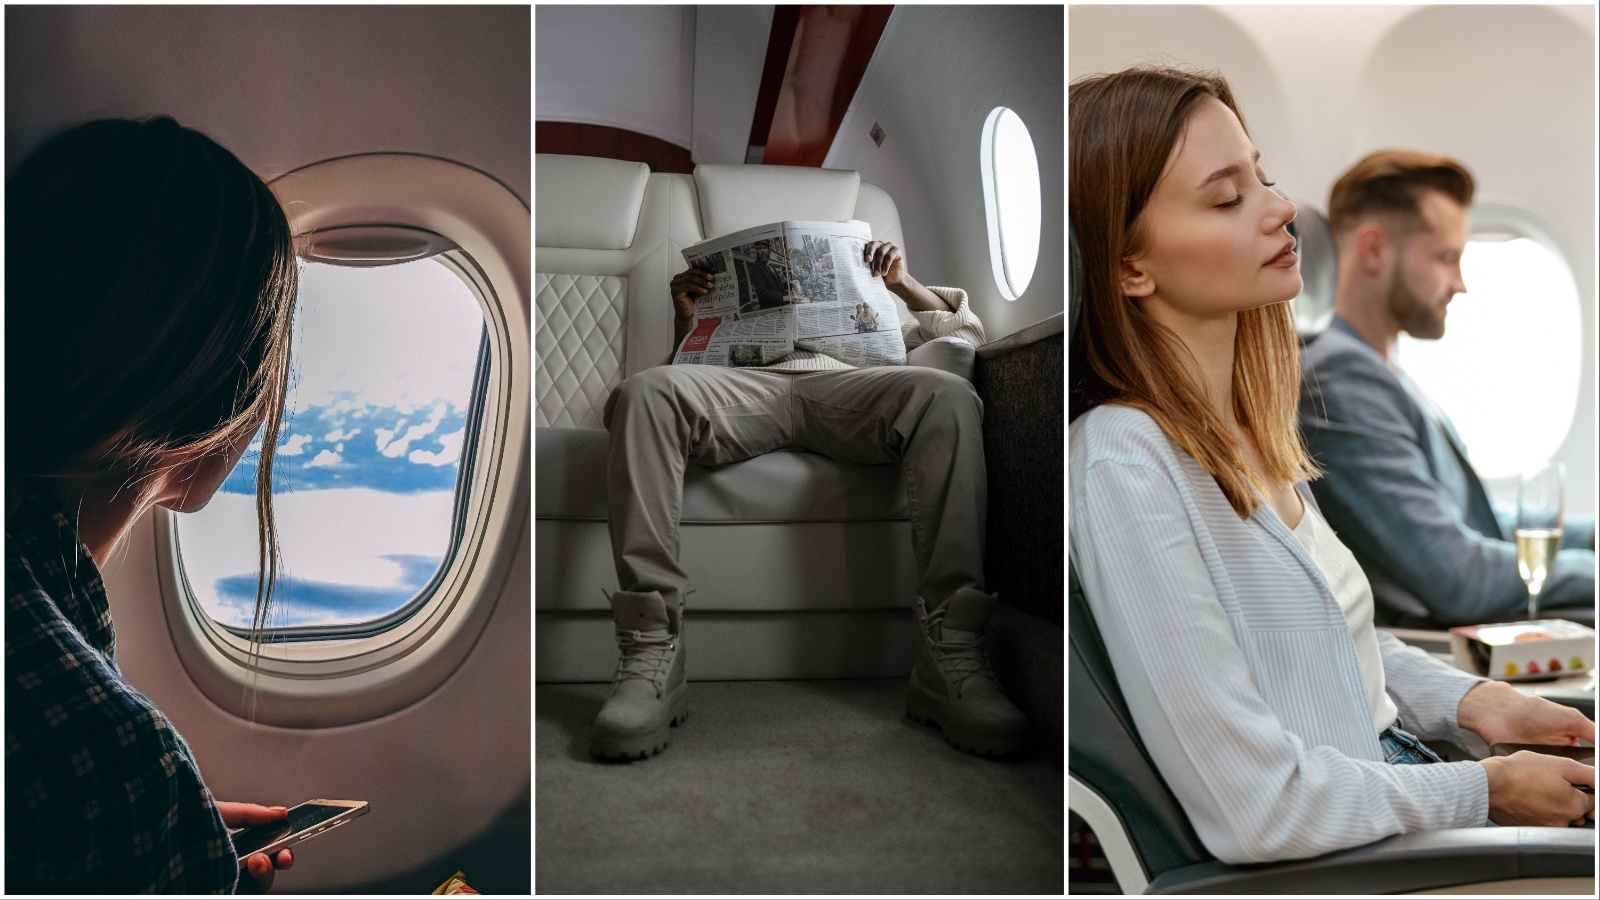 Adults-Only: Ova zrakoplovna kompanija imat će zonu bez djece u avionu